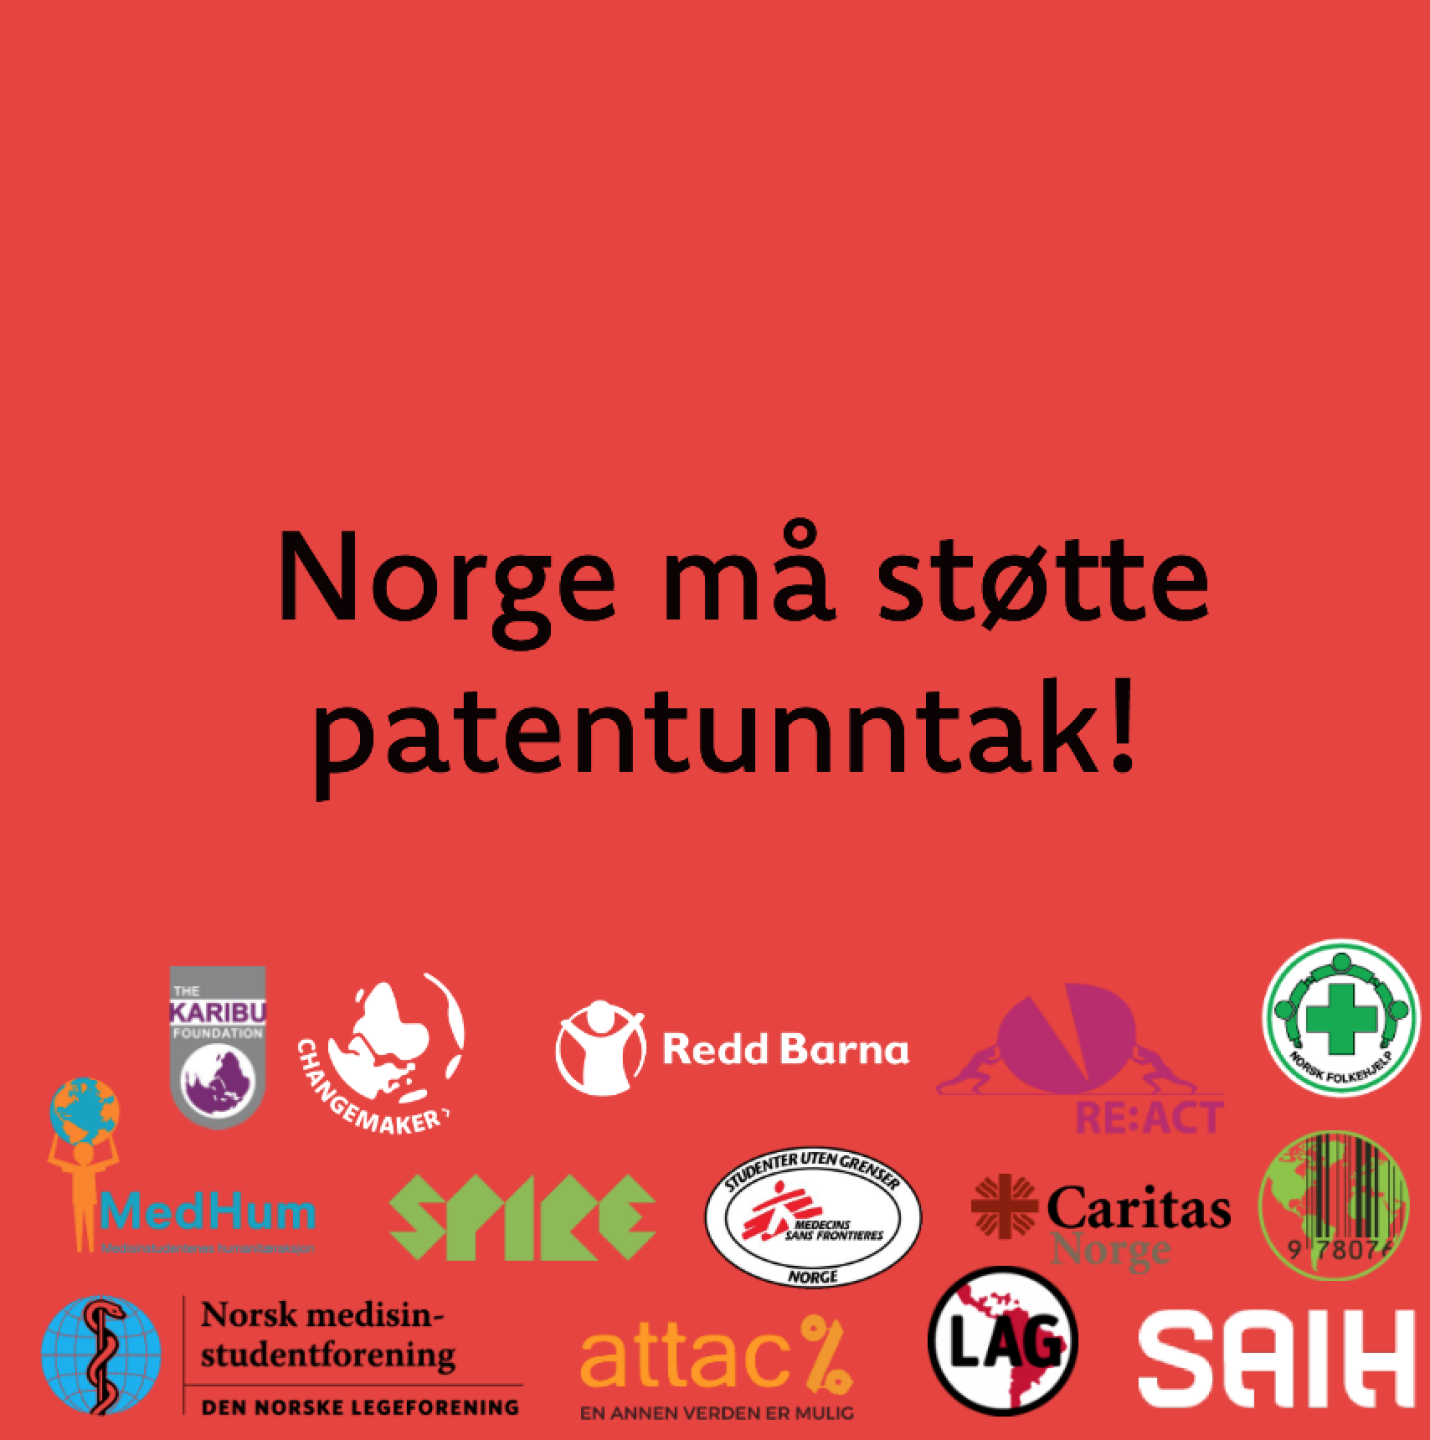 Norske sivilsamfunnsorganisasjoner med opprop for patentunntak